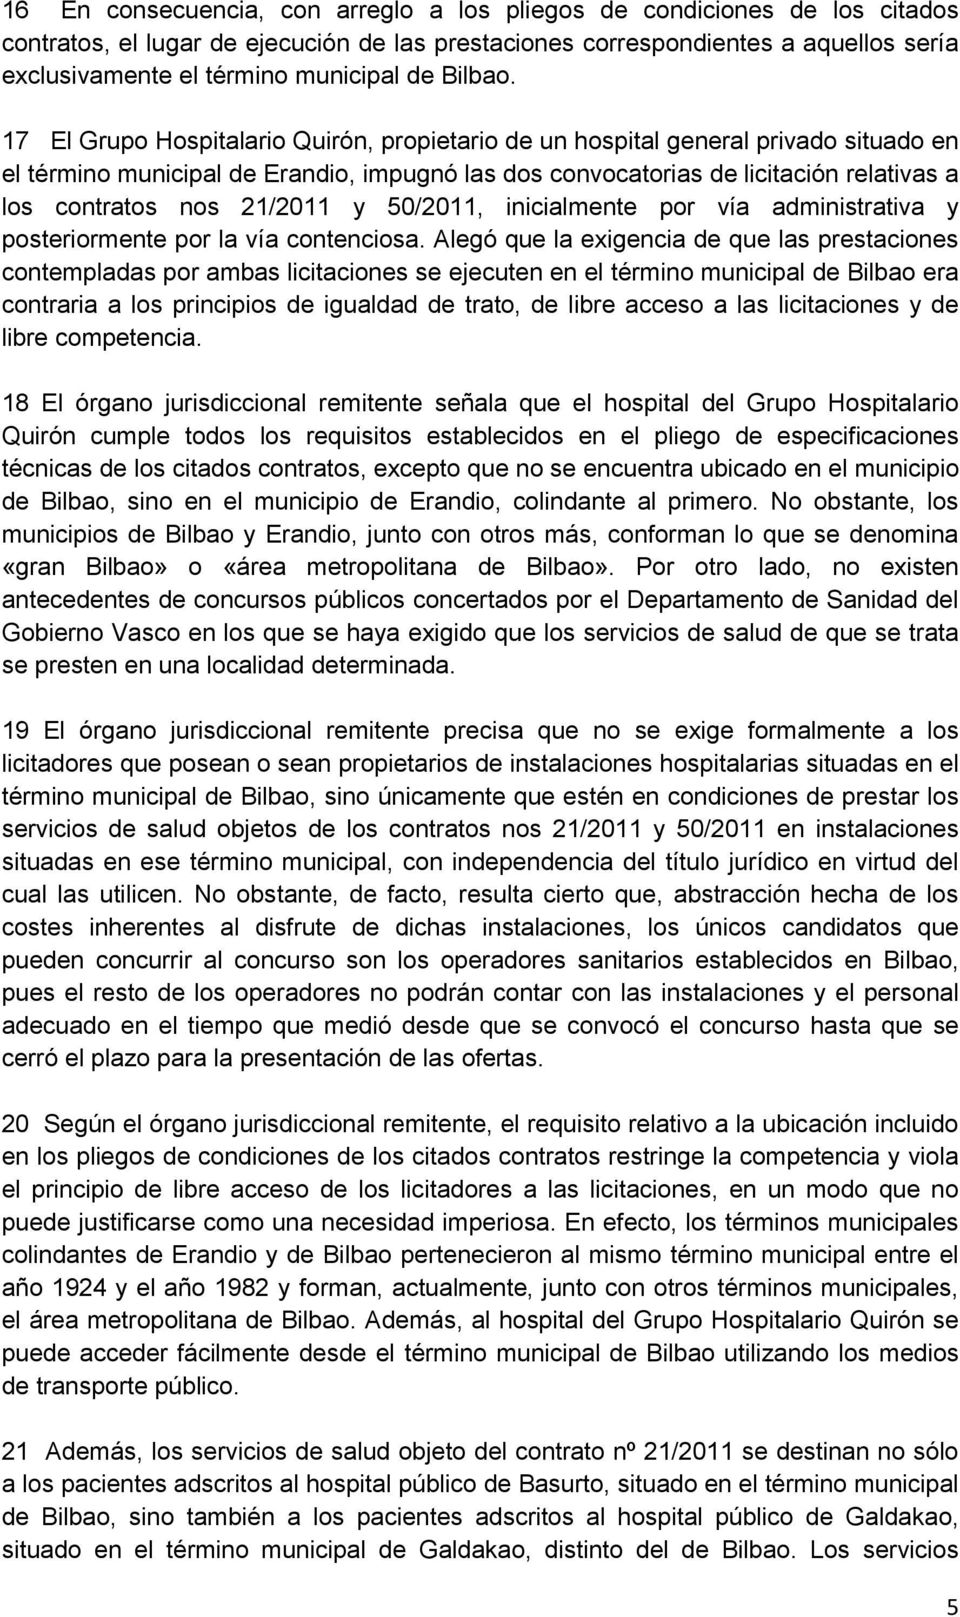 17 El Grupo Hospitalario Quirón, propietario de un hospital general privado situado en el término municipal de Erandio, impugnó las dos convocatorias de licitación relativas a los contratos nos